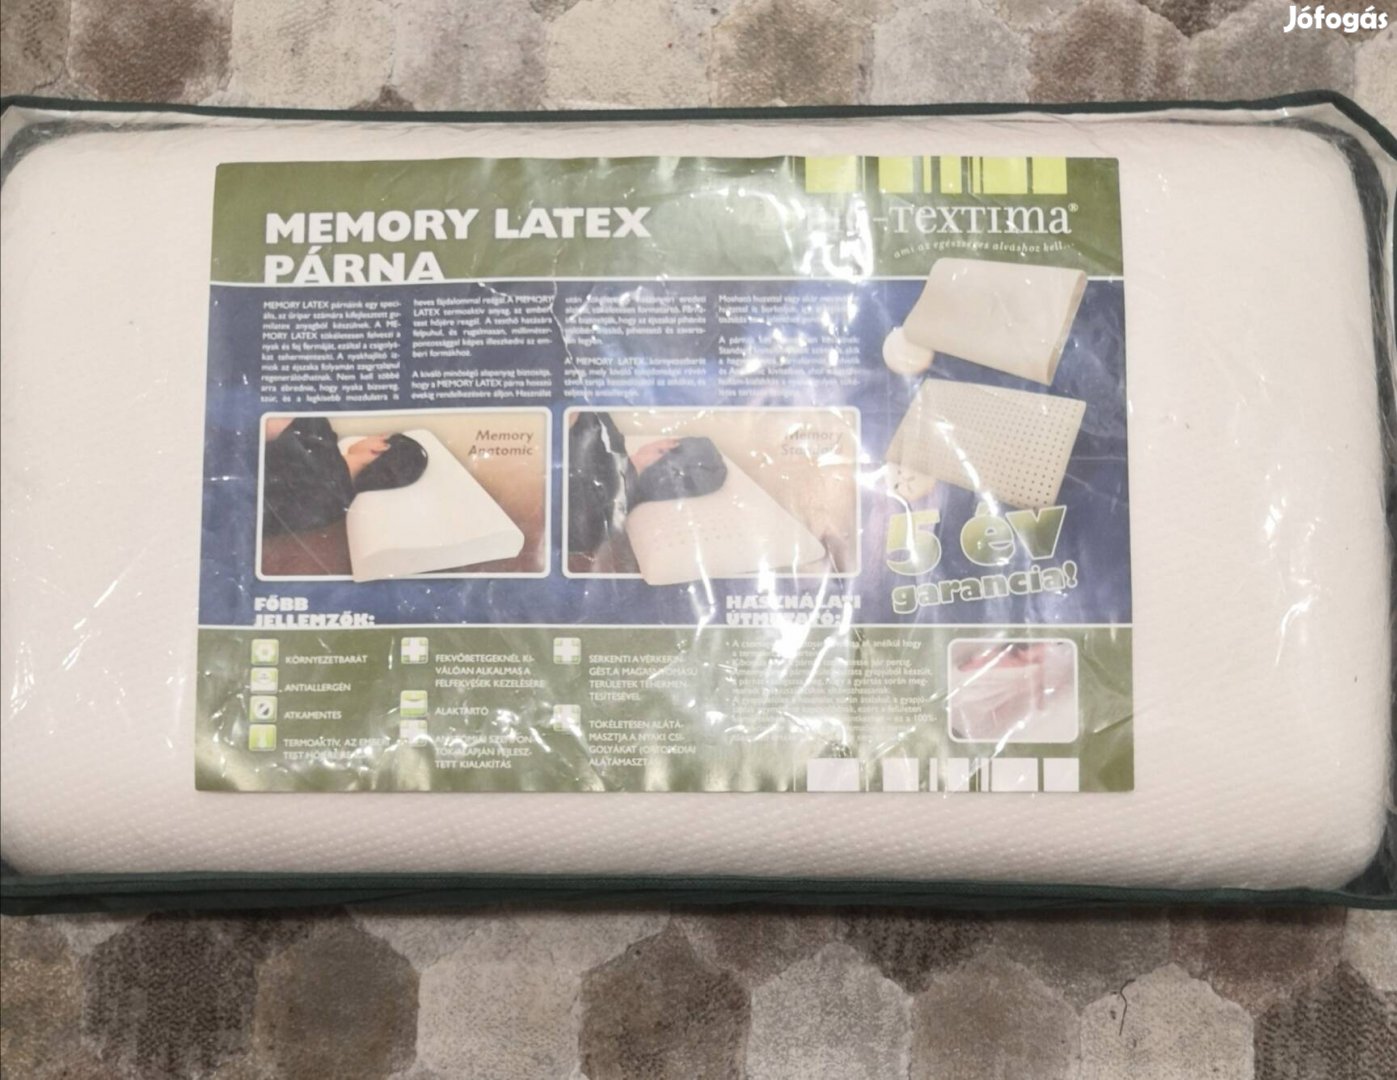 Memory latex párna